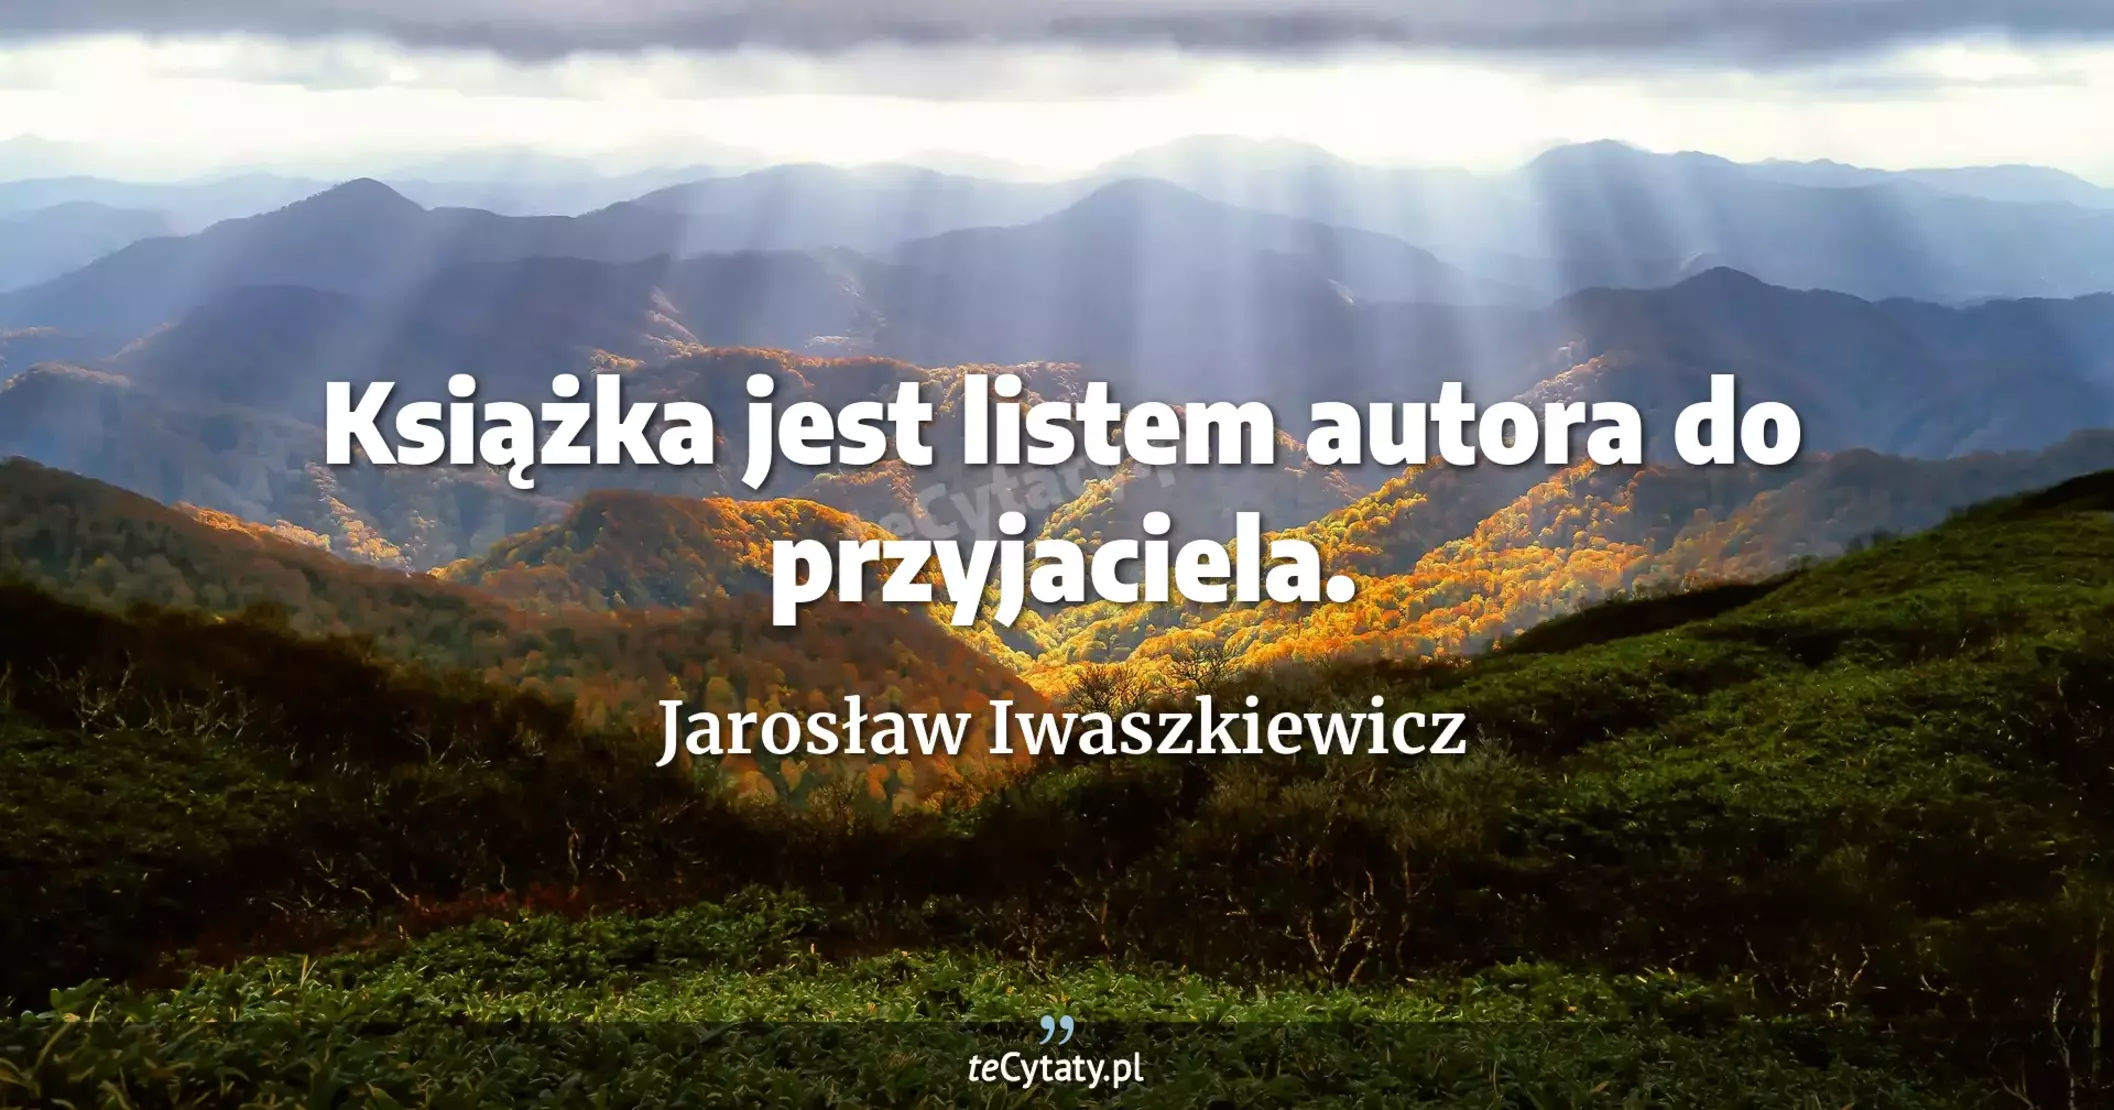 Książka jest listem autora do przyjaciela. - Jarosław Iwaszkiewicz